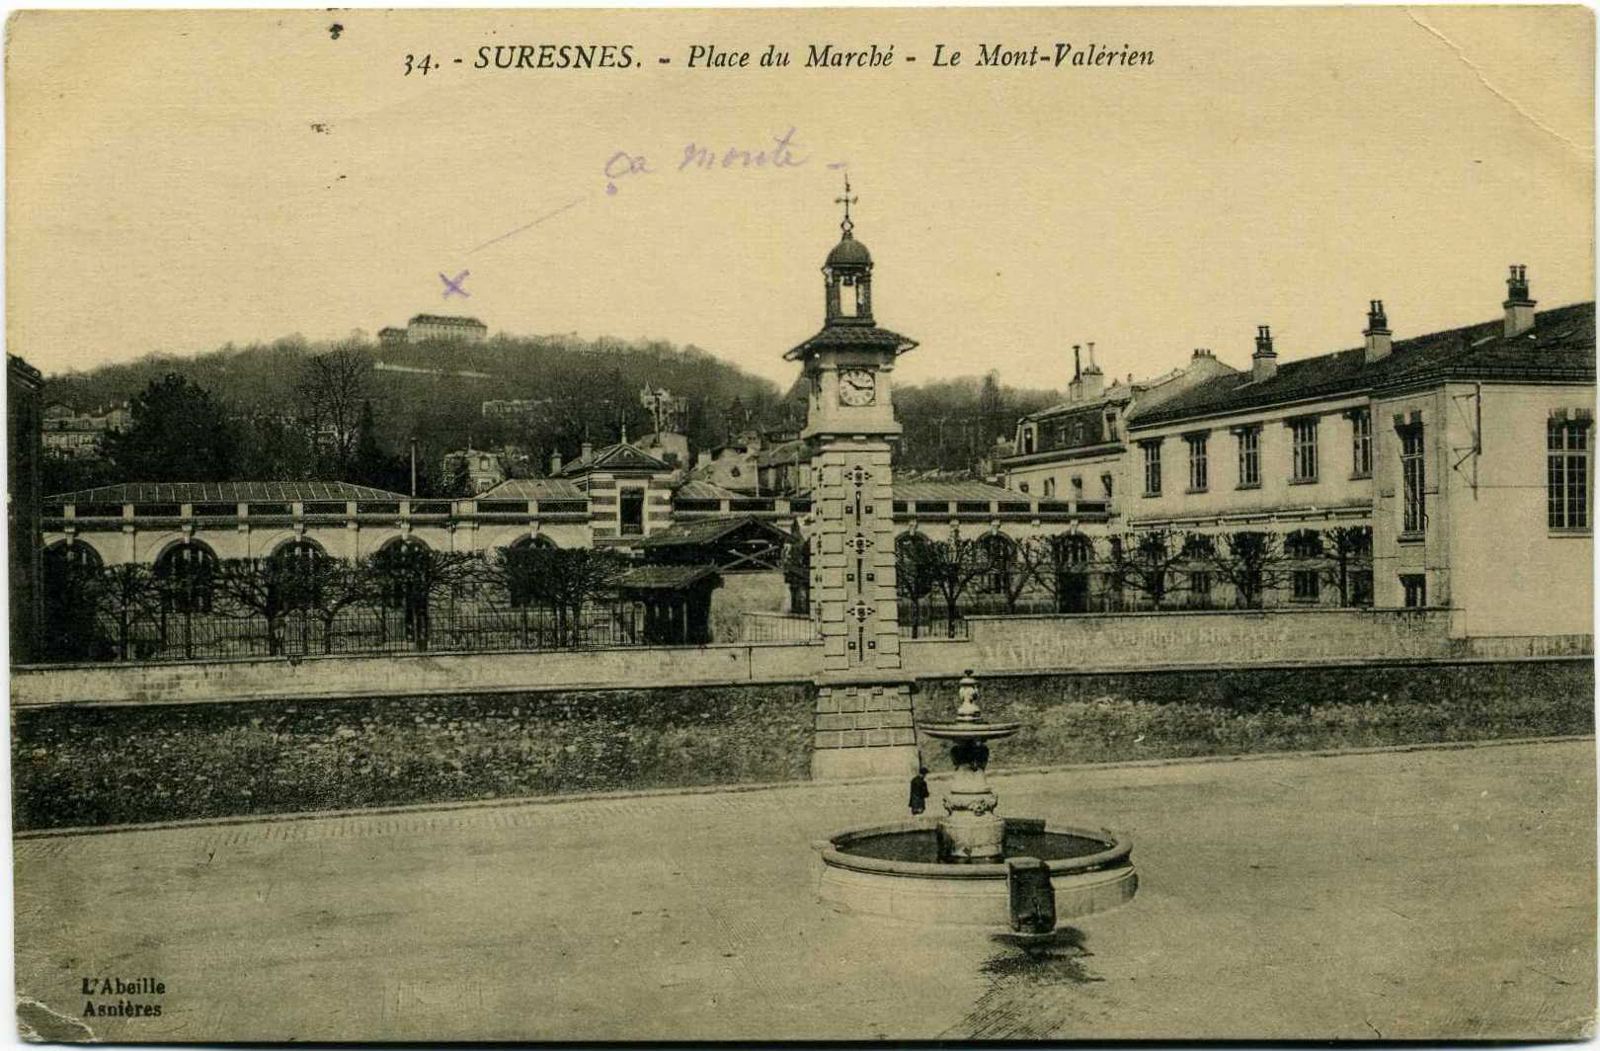 SURESNES - Place du Marché - Le Mont-Valérien